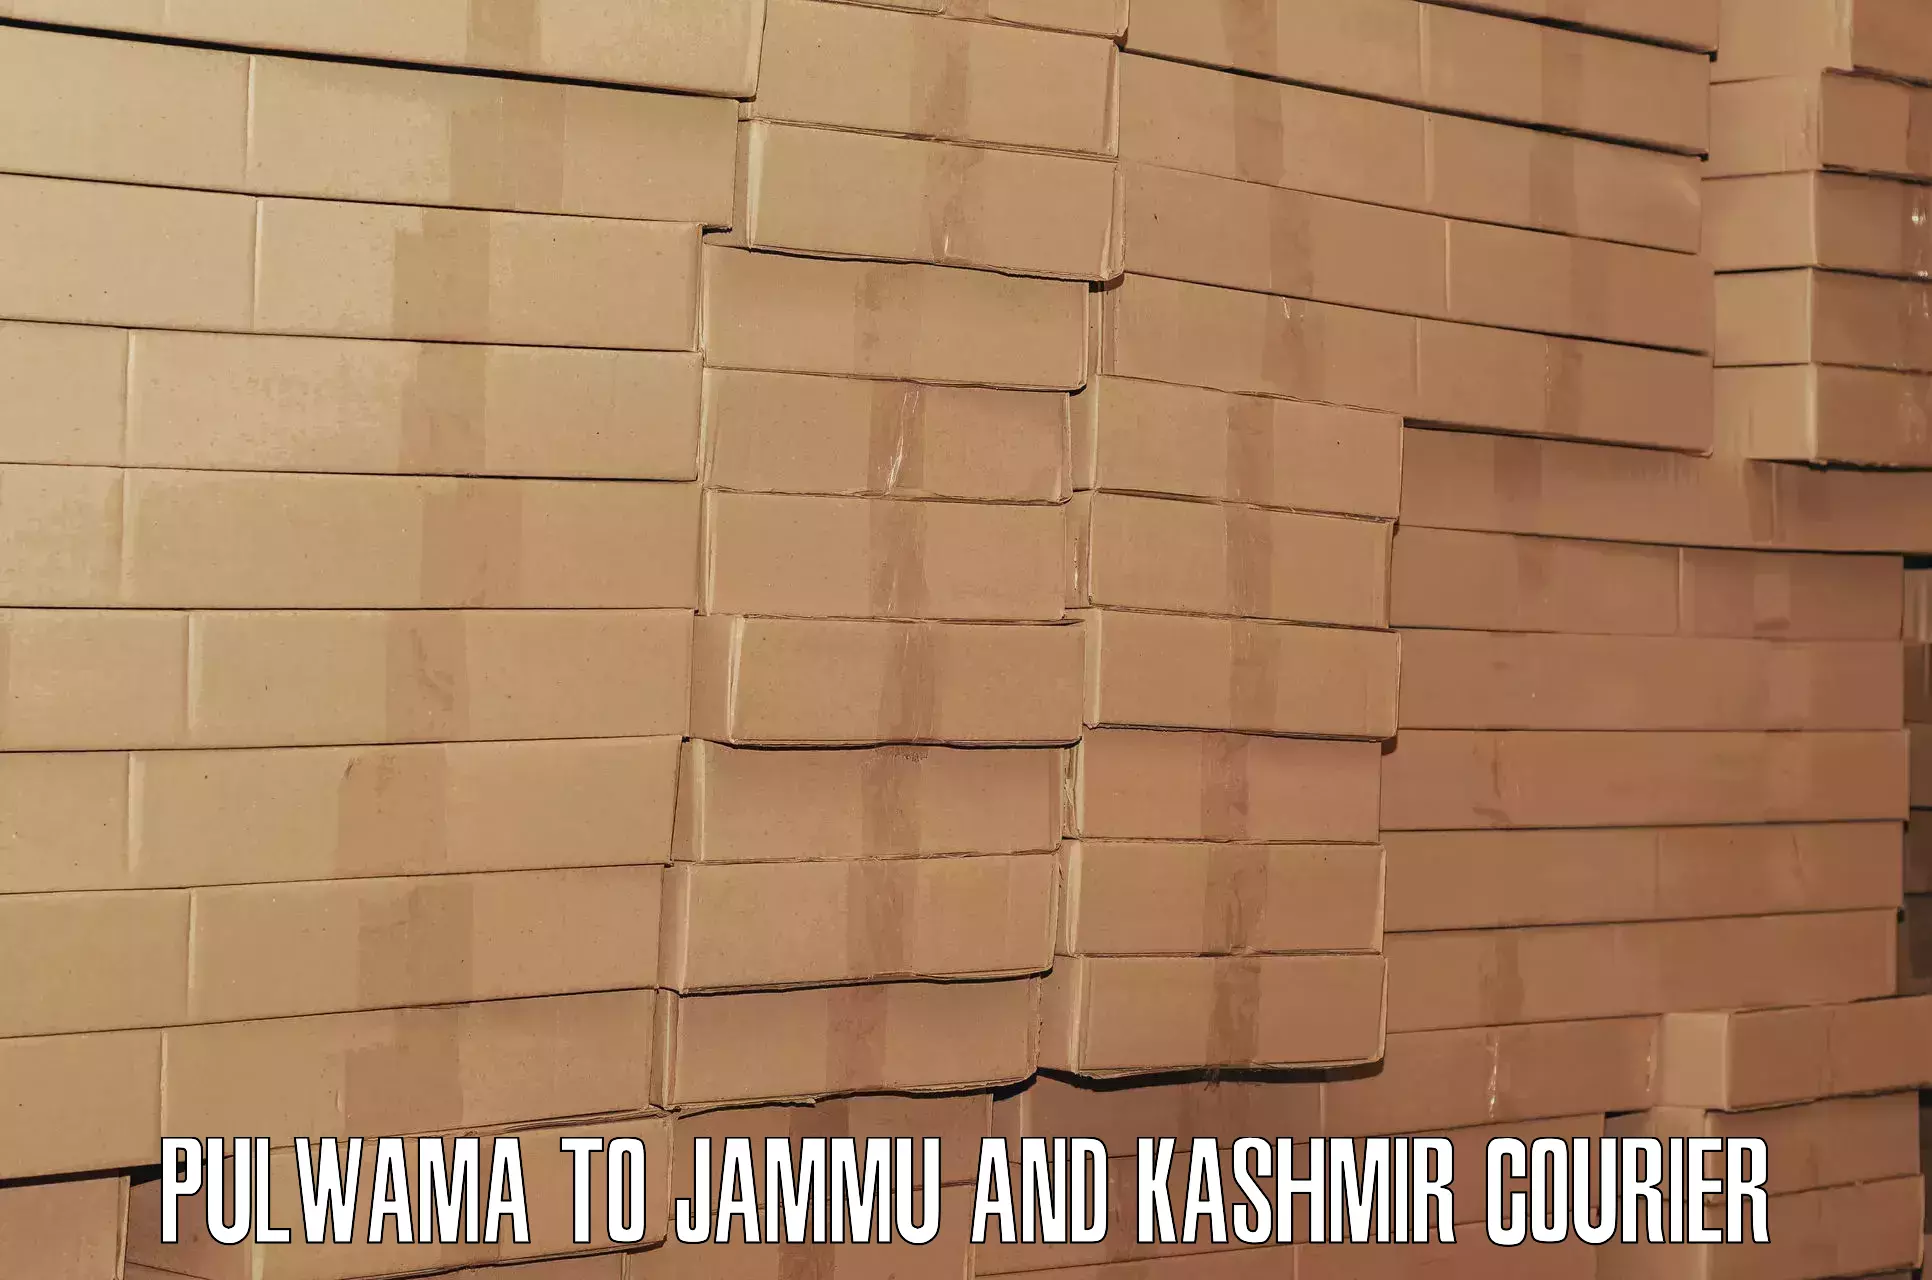 Luggage delivery app Pulwama to IIT Jammu